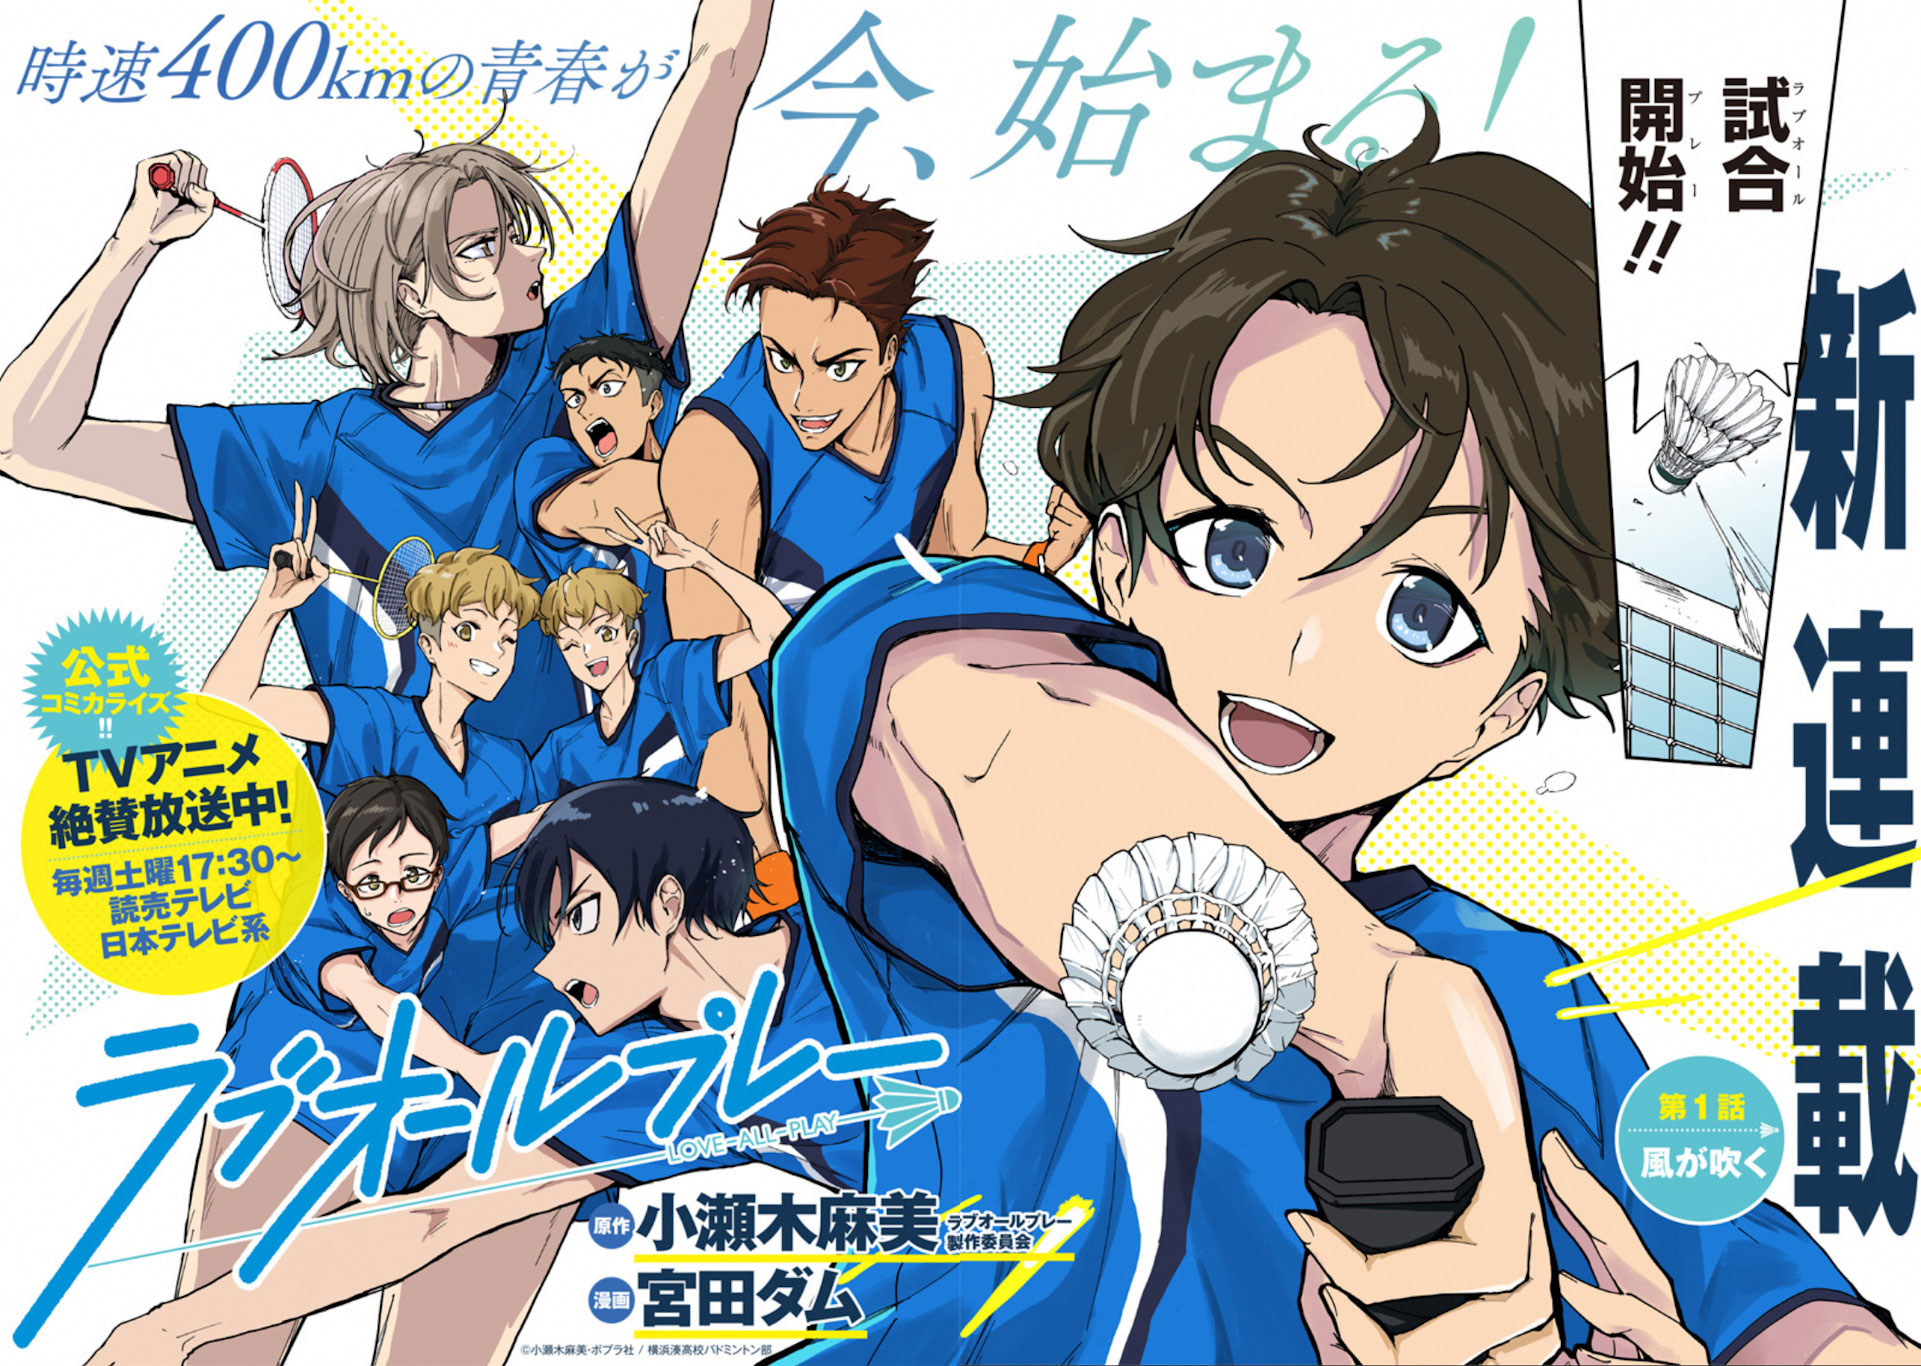 11 Karakter di Anime Love All Play, Impian Menjadi Pemain Badminton-demhanvico.com.vn